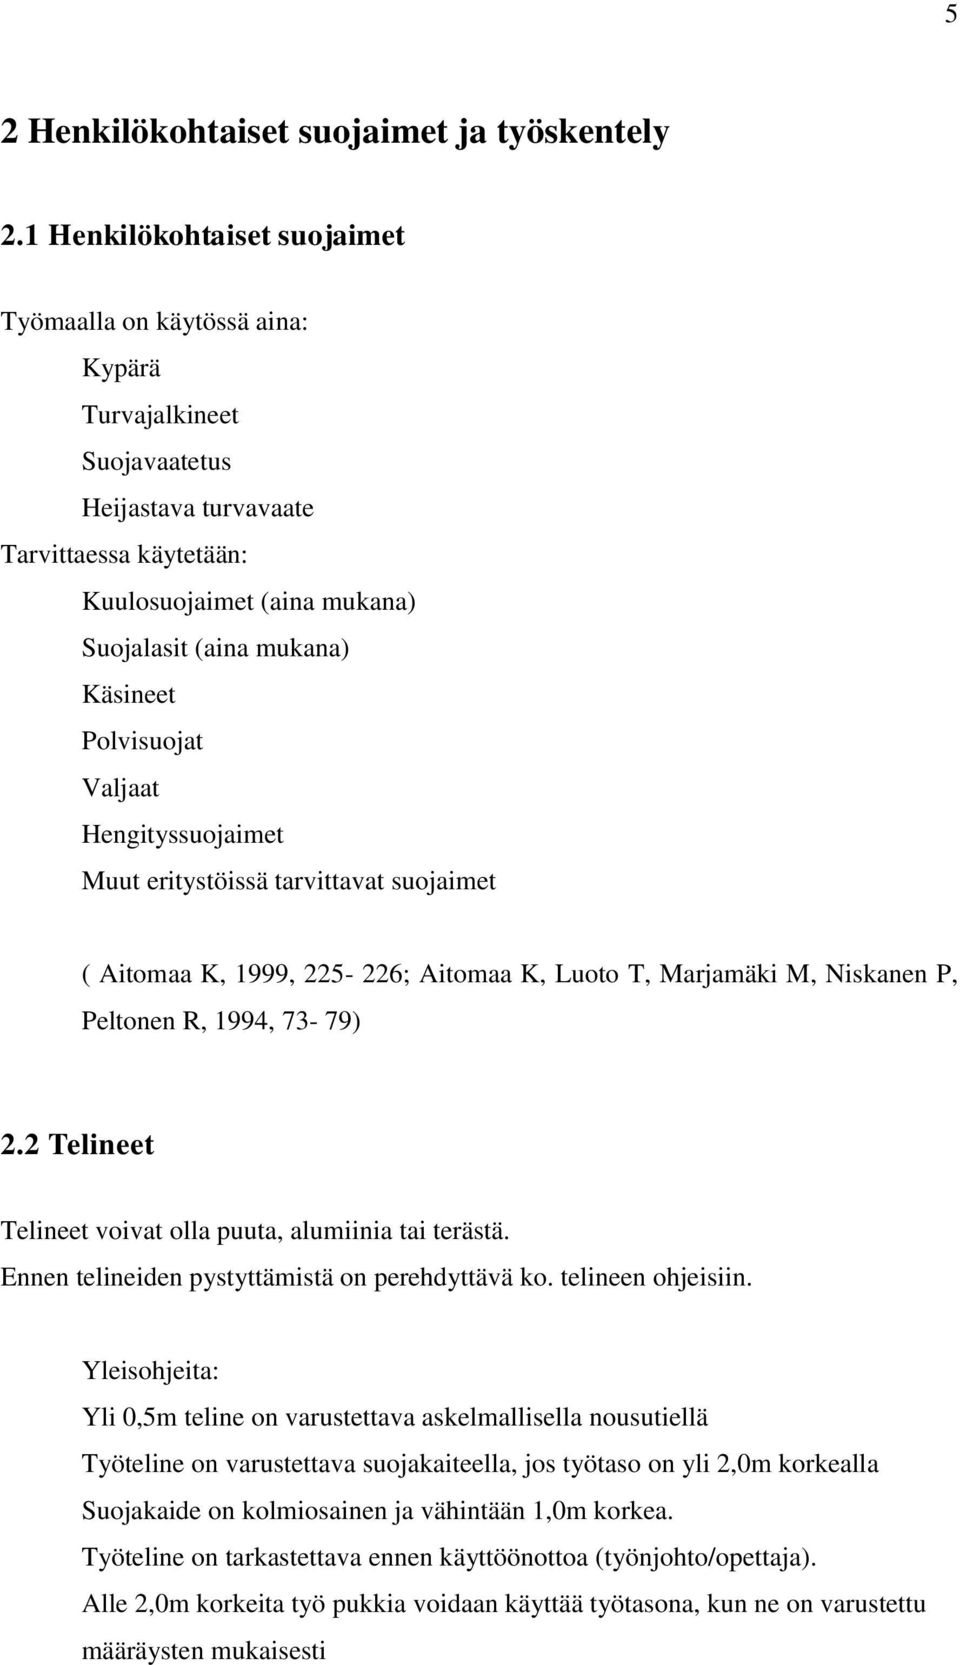 Käsineet Polvisuojat Valjaat Hengityssuojaimet Muut eritystöissä tarvittavat suojaimet ( Aitomaa K, 1999, 225-226; Aitomaa K, Luoto T, Marjamäki M, Niskanen P, Peltonen R, 1994, 73-79) 2.